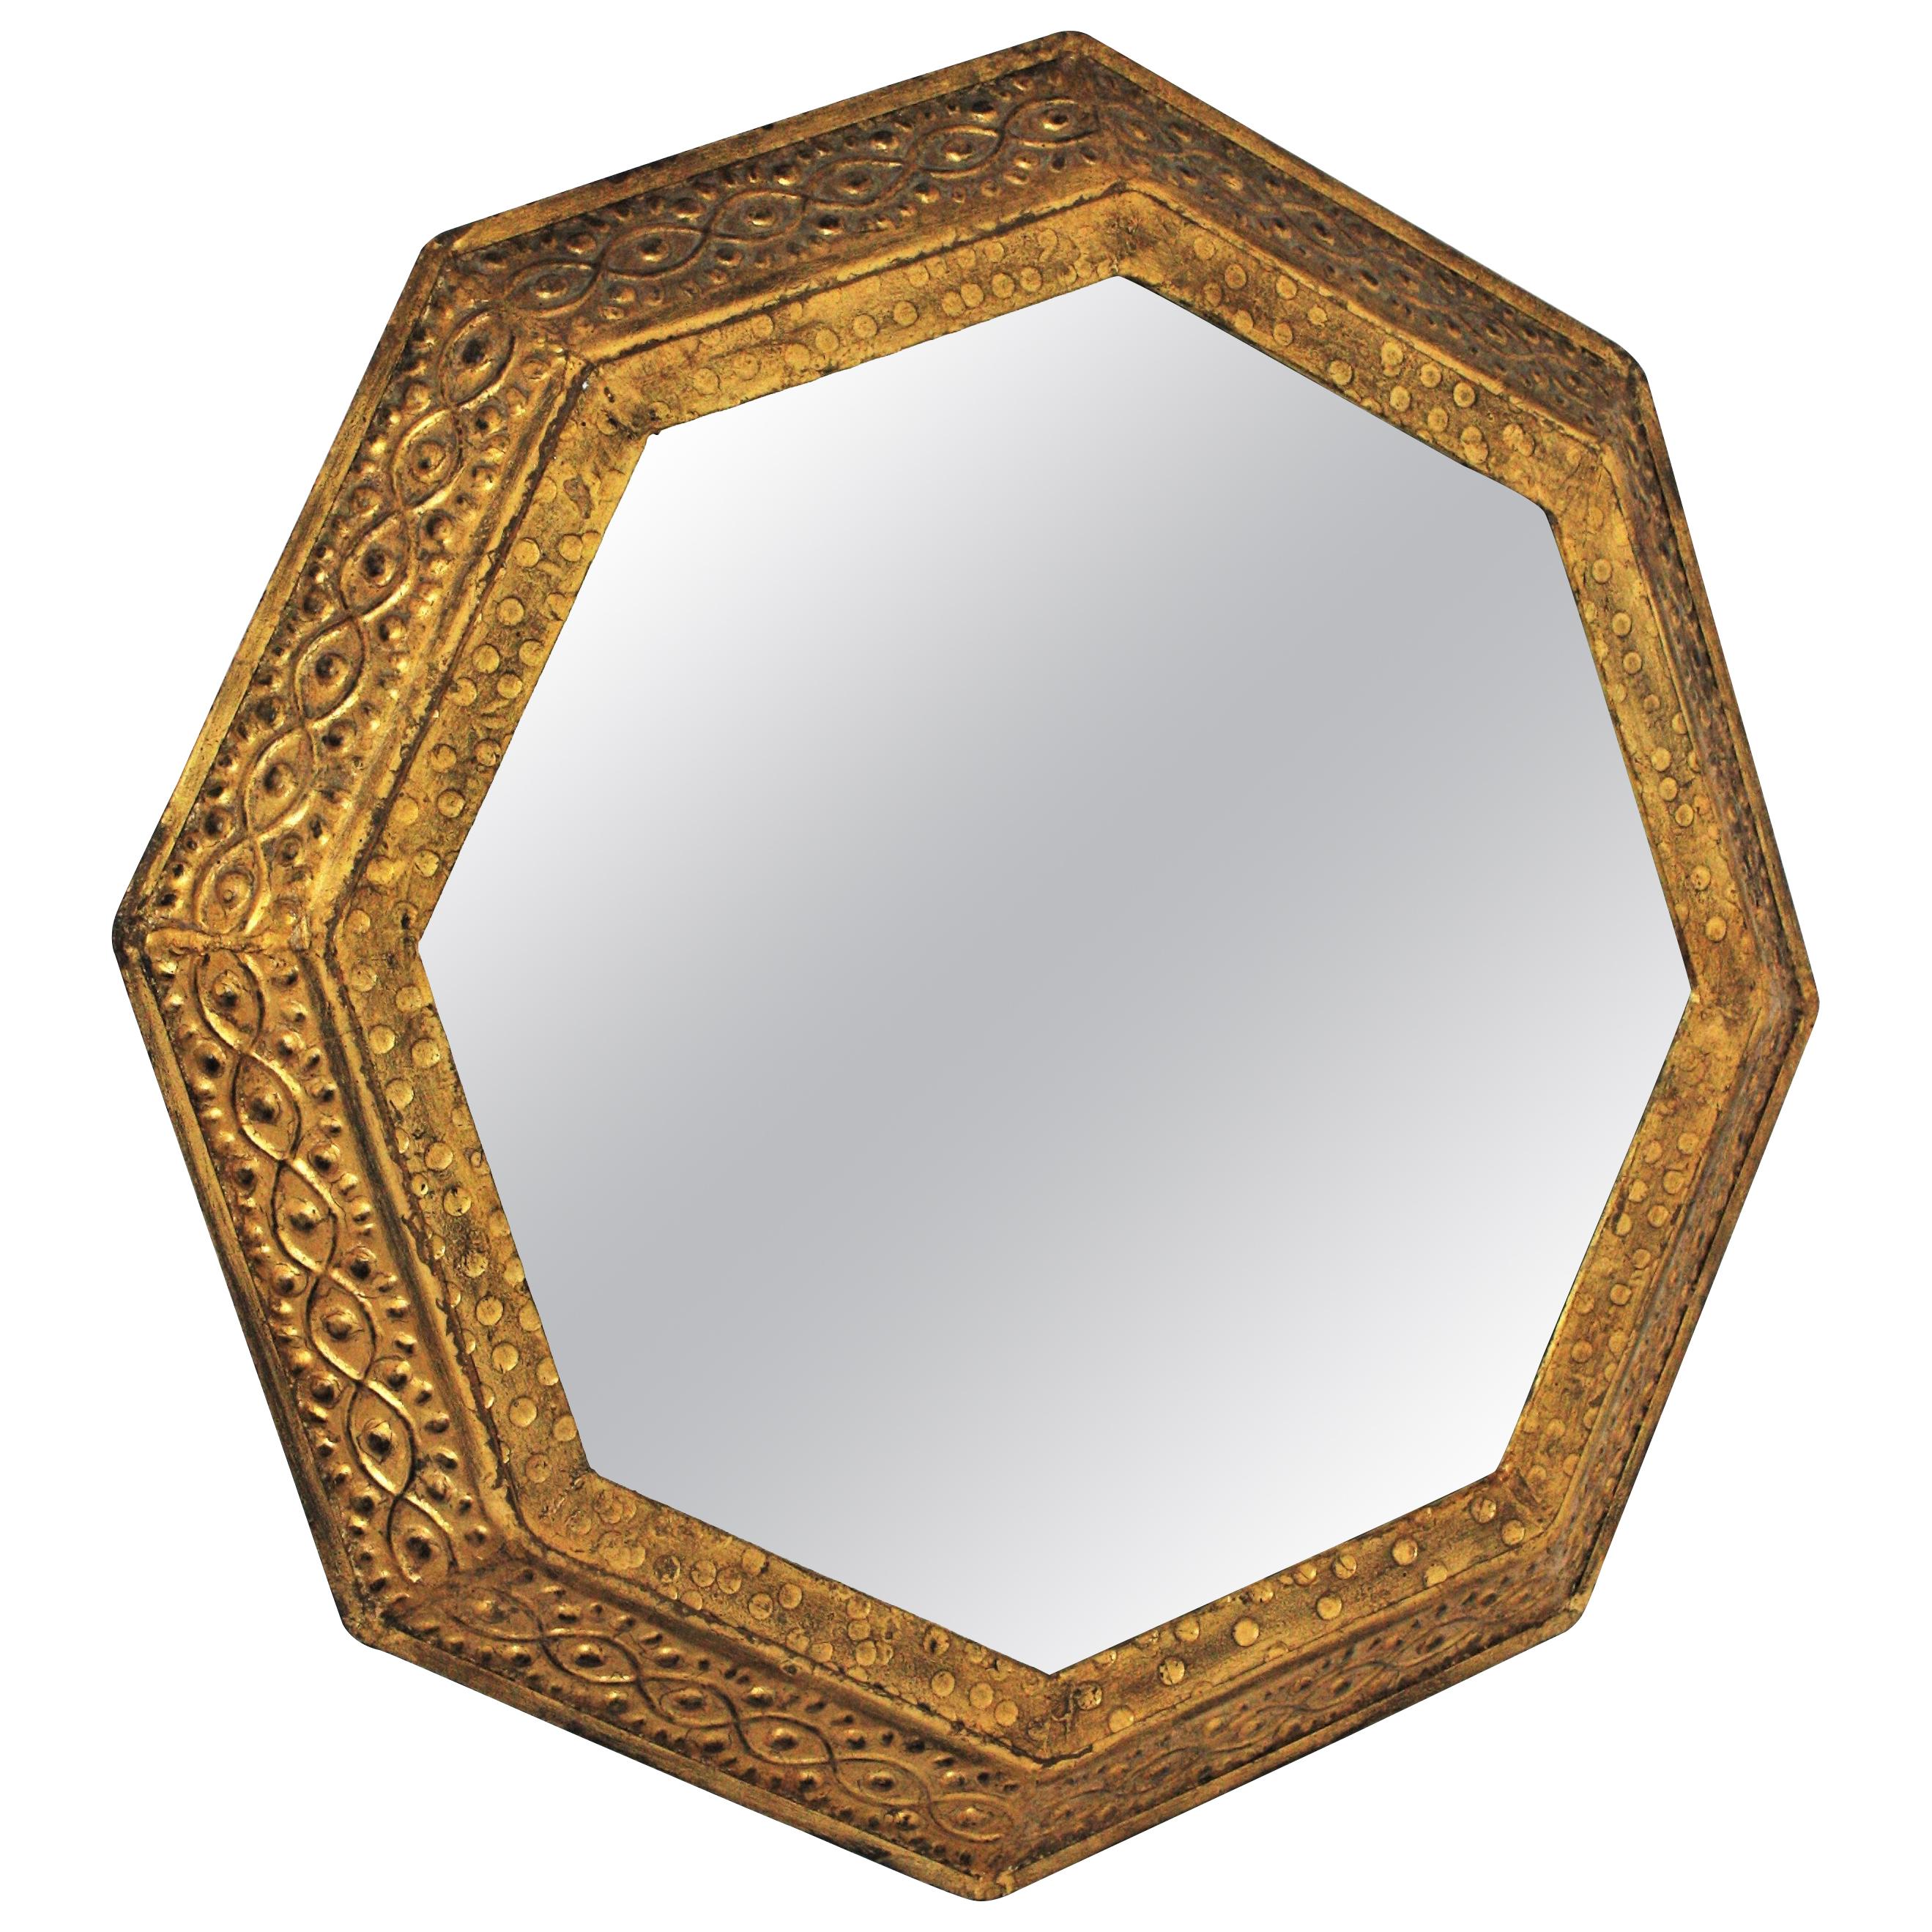 Ein eleganter achteckiger Spiegel aus vergoldetem Schmiedeeisen mit klassischen Mustern auf dem Rahmen. Hergestellt von Ferro-Art. Spanien, 1950er Jahre.
Dieser auffällige Spiegel hat einen achteckigen Rahmen, der brutalistische und